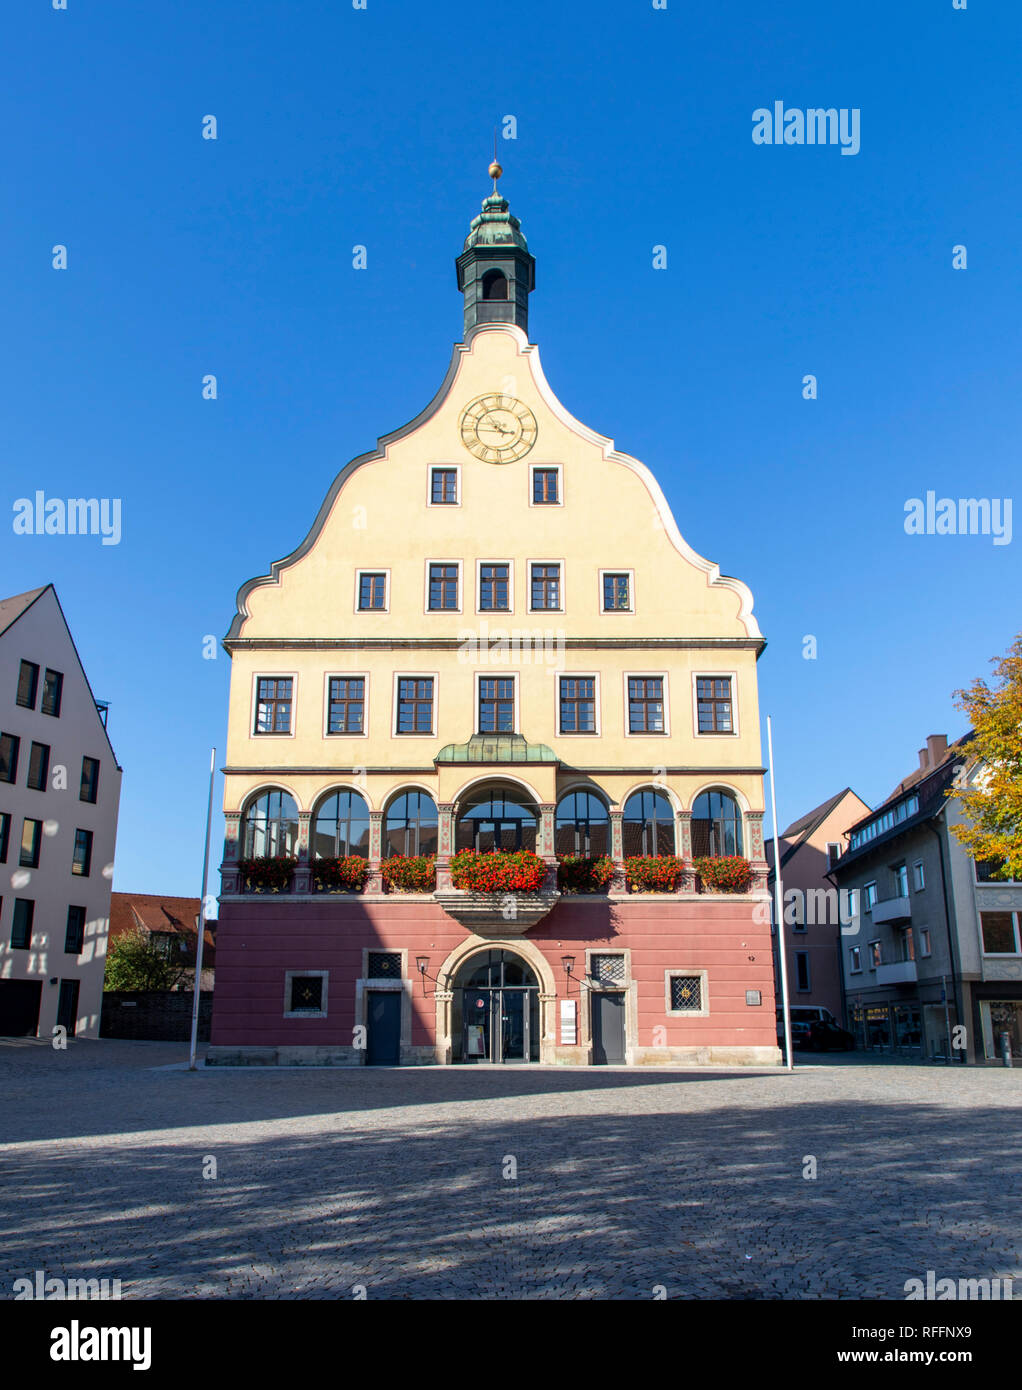 Ulm, vieille ville, le Schwšrhaus, à la Chambre, aujourd'hui Hostellerie Geroldswil Swiss Q de l'histoire de la ville Ulm, Allemagne Banque D'Images